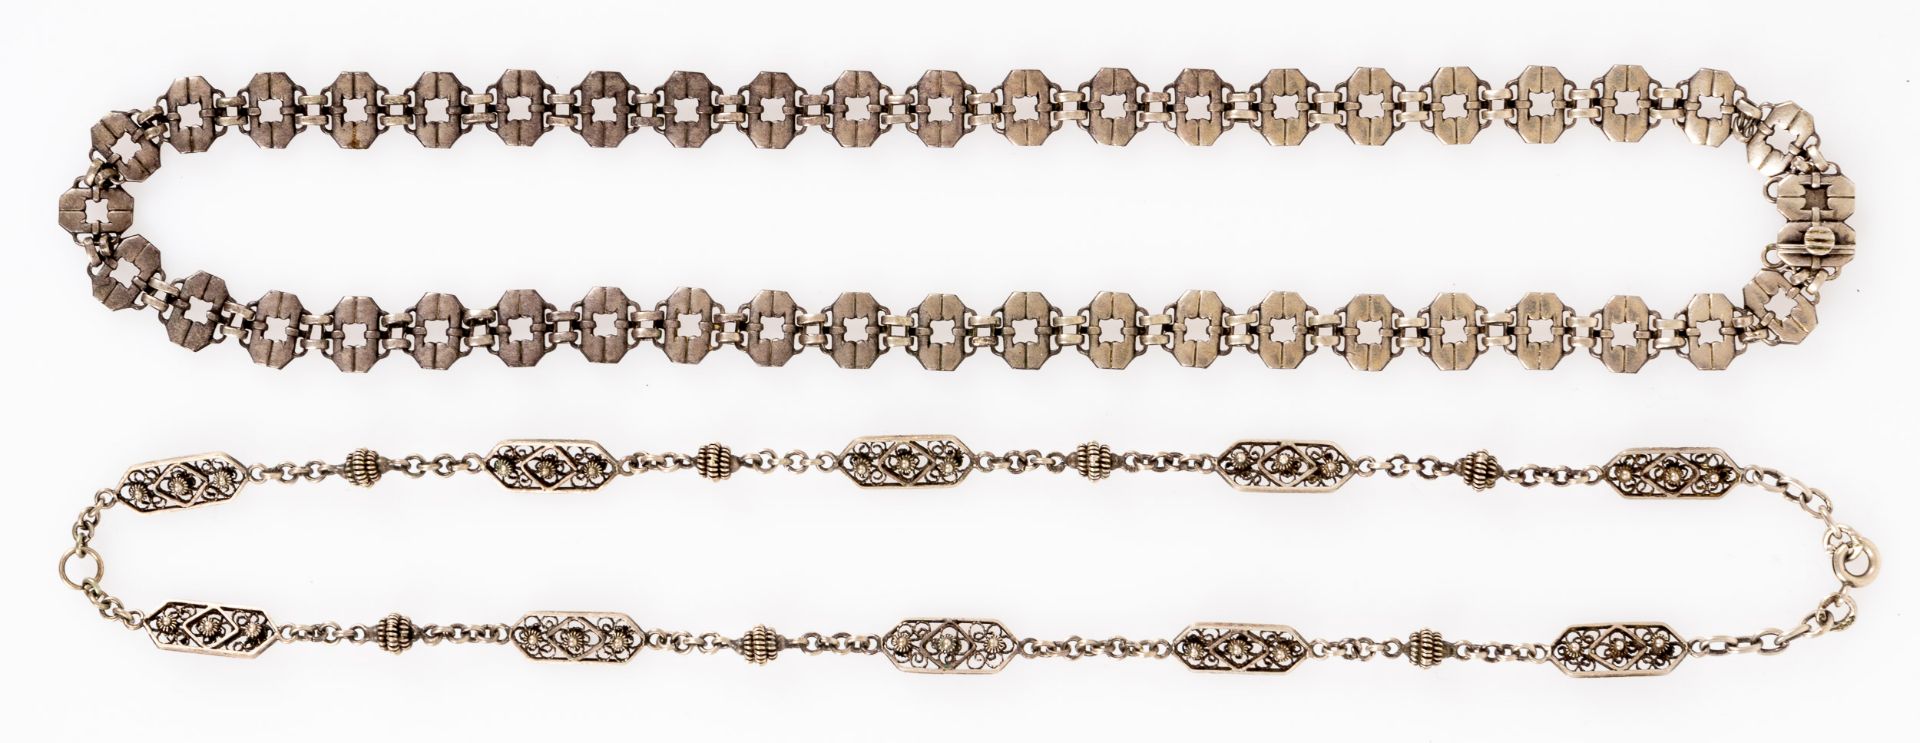 2 versch. silberne Halsketten, Länge je ca. 40 cm, versch. Ausführungen, Größen, Alter & Erhalt. - Image 2 of 5